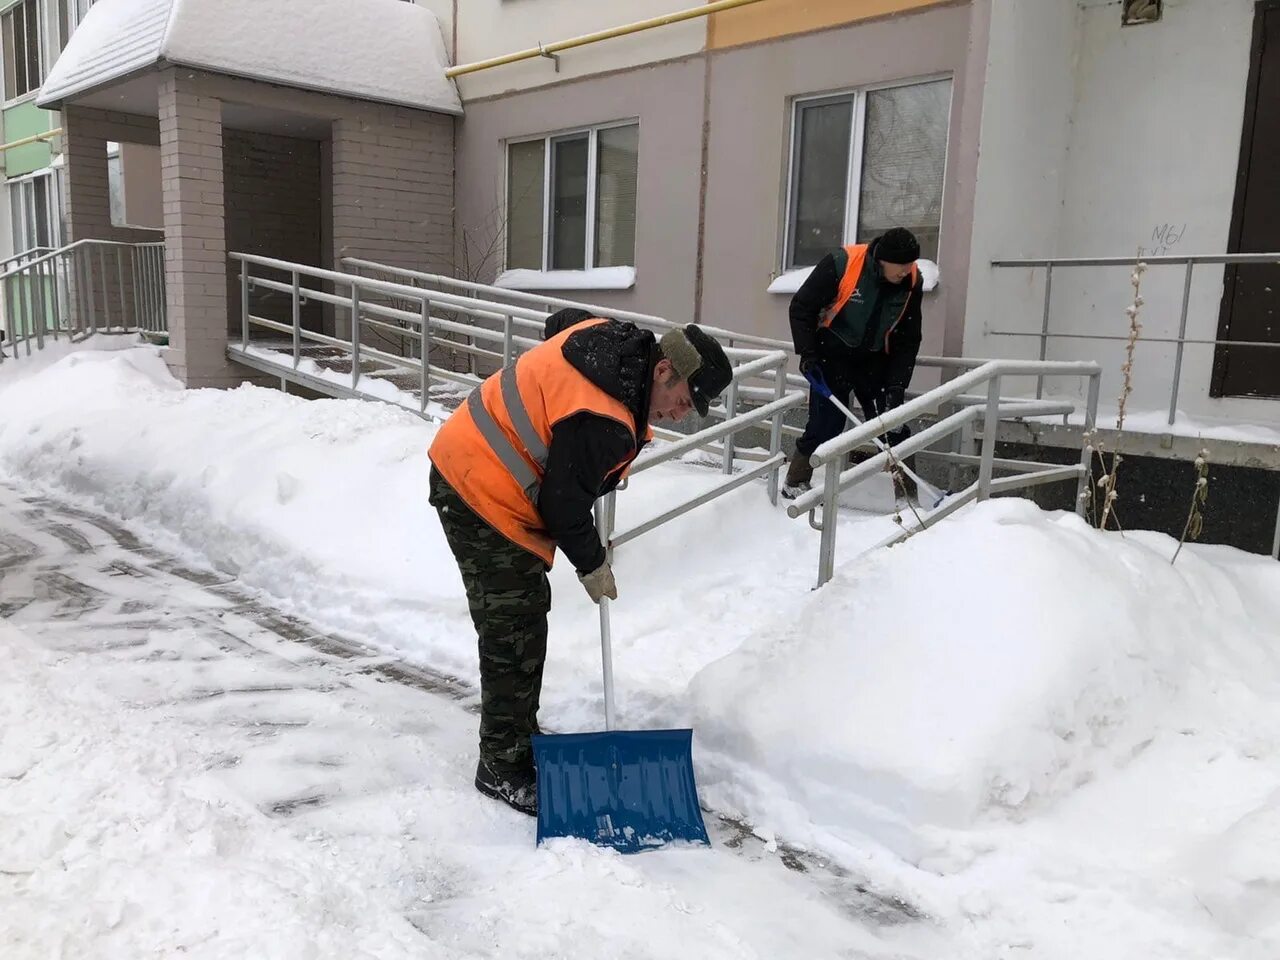 Уборка снега. Уборка снега Ульяновск. Машины для уборки снега внутриквартальных дорог. Внутриквартальная уборка снега. Сугробов работа